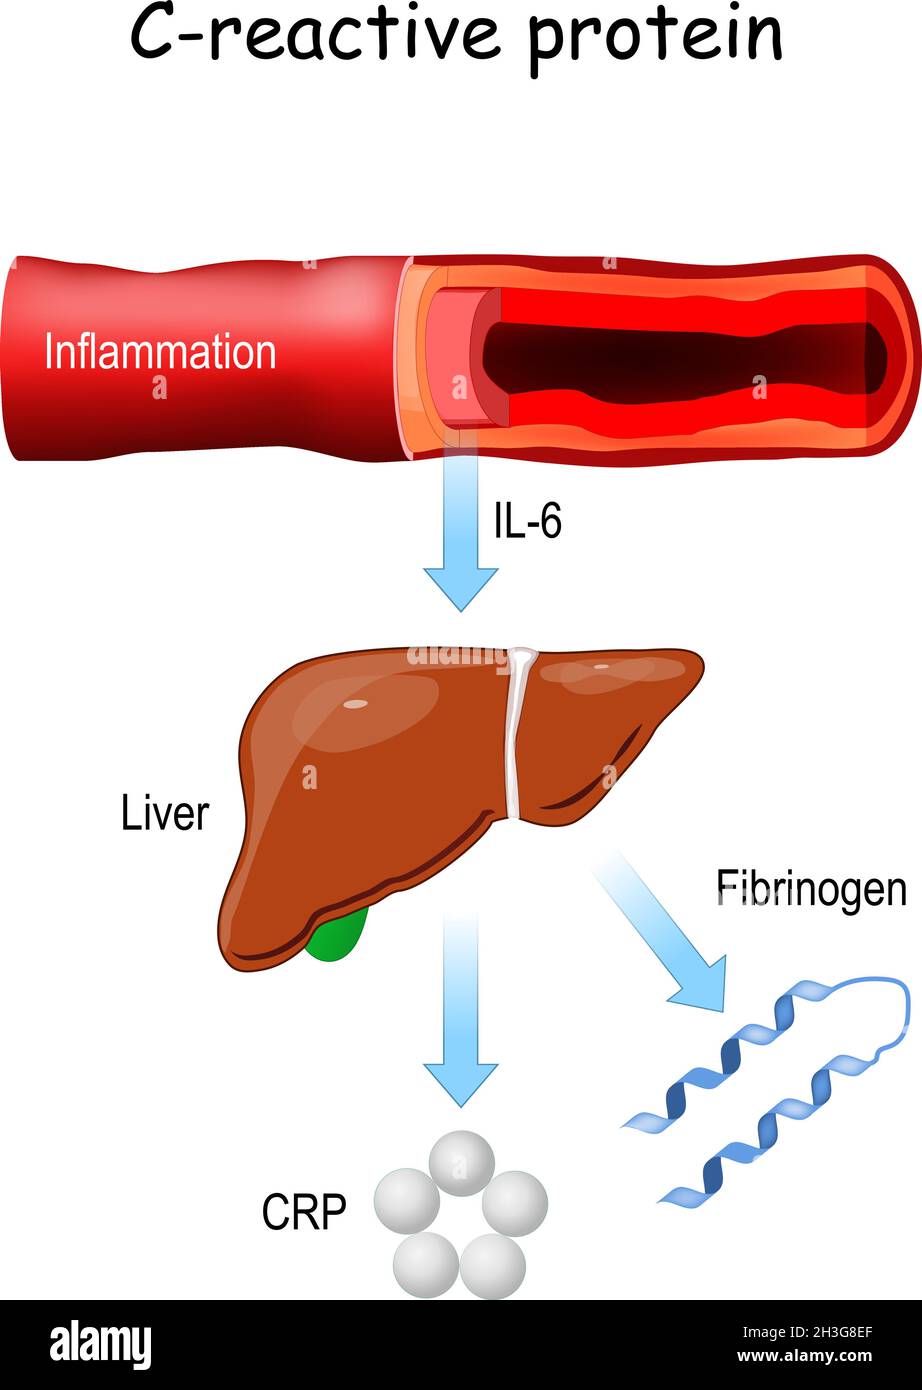 Proteina C-reattiva, e citochina pro-infiammatoria il-6. Infiammazione dei vasi sanguigni. Rilascio epatico di fibrinogeno e CRP. Illustrazione Vettoriale